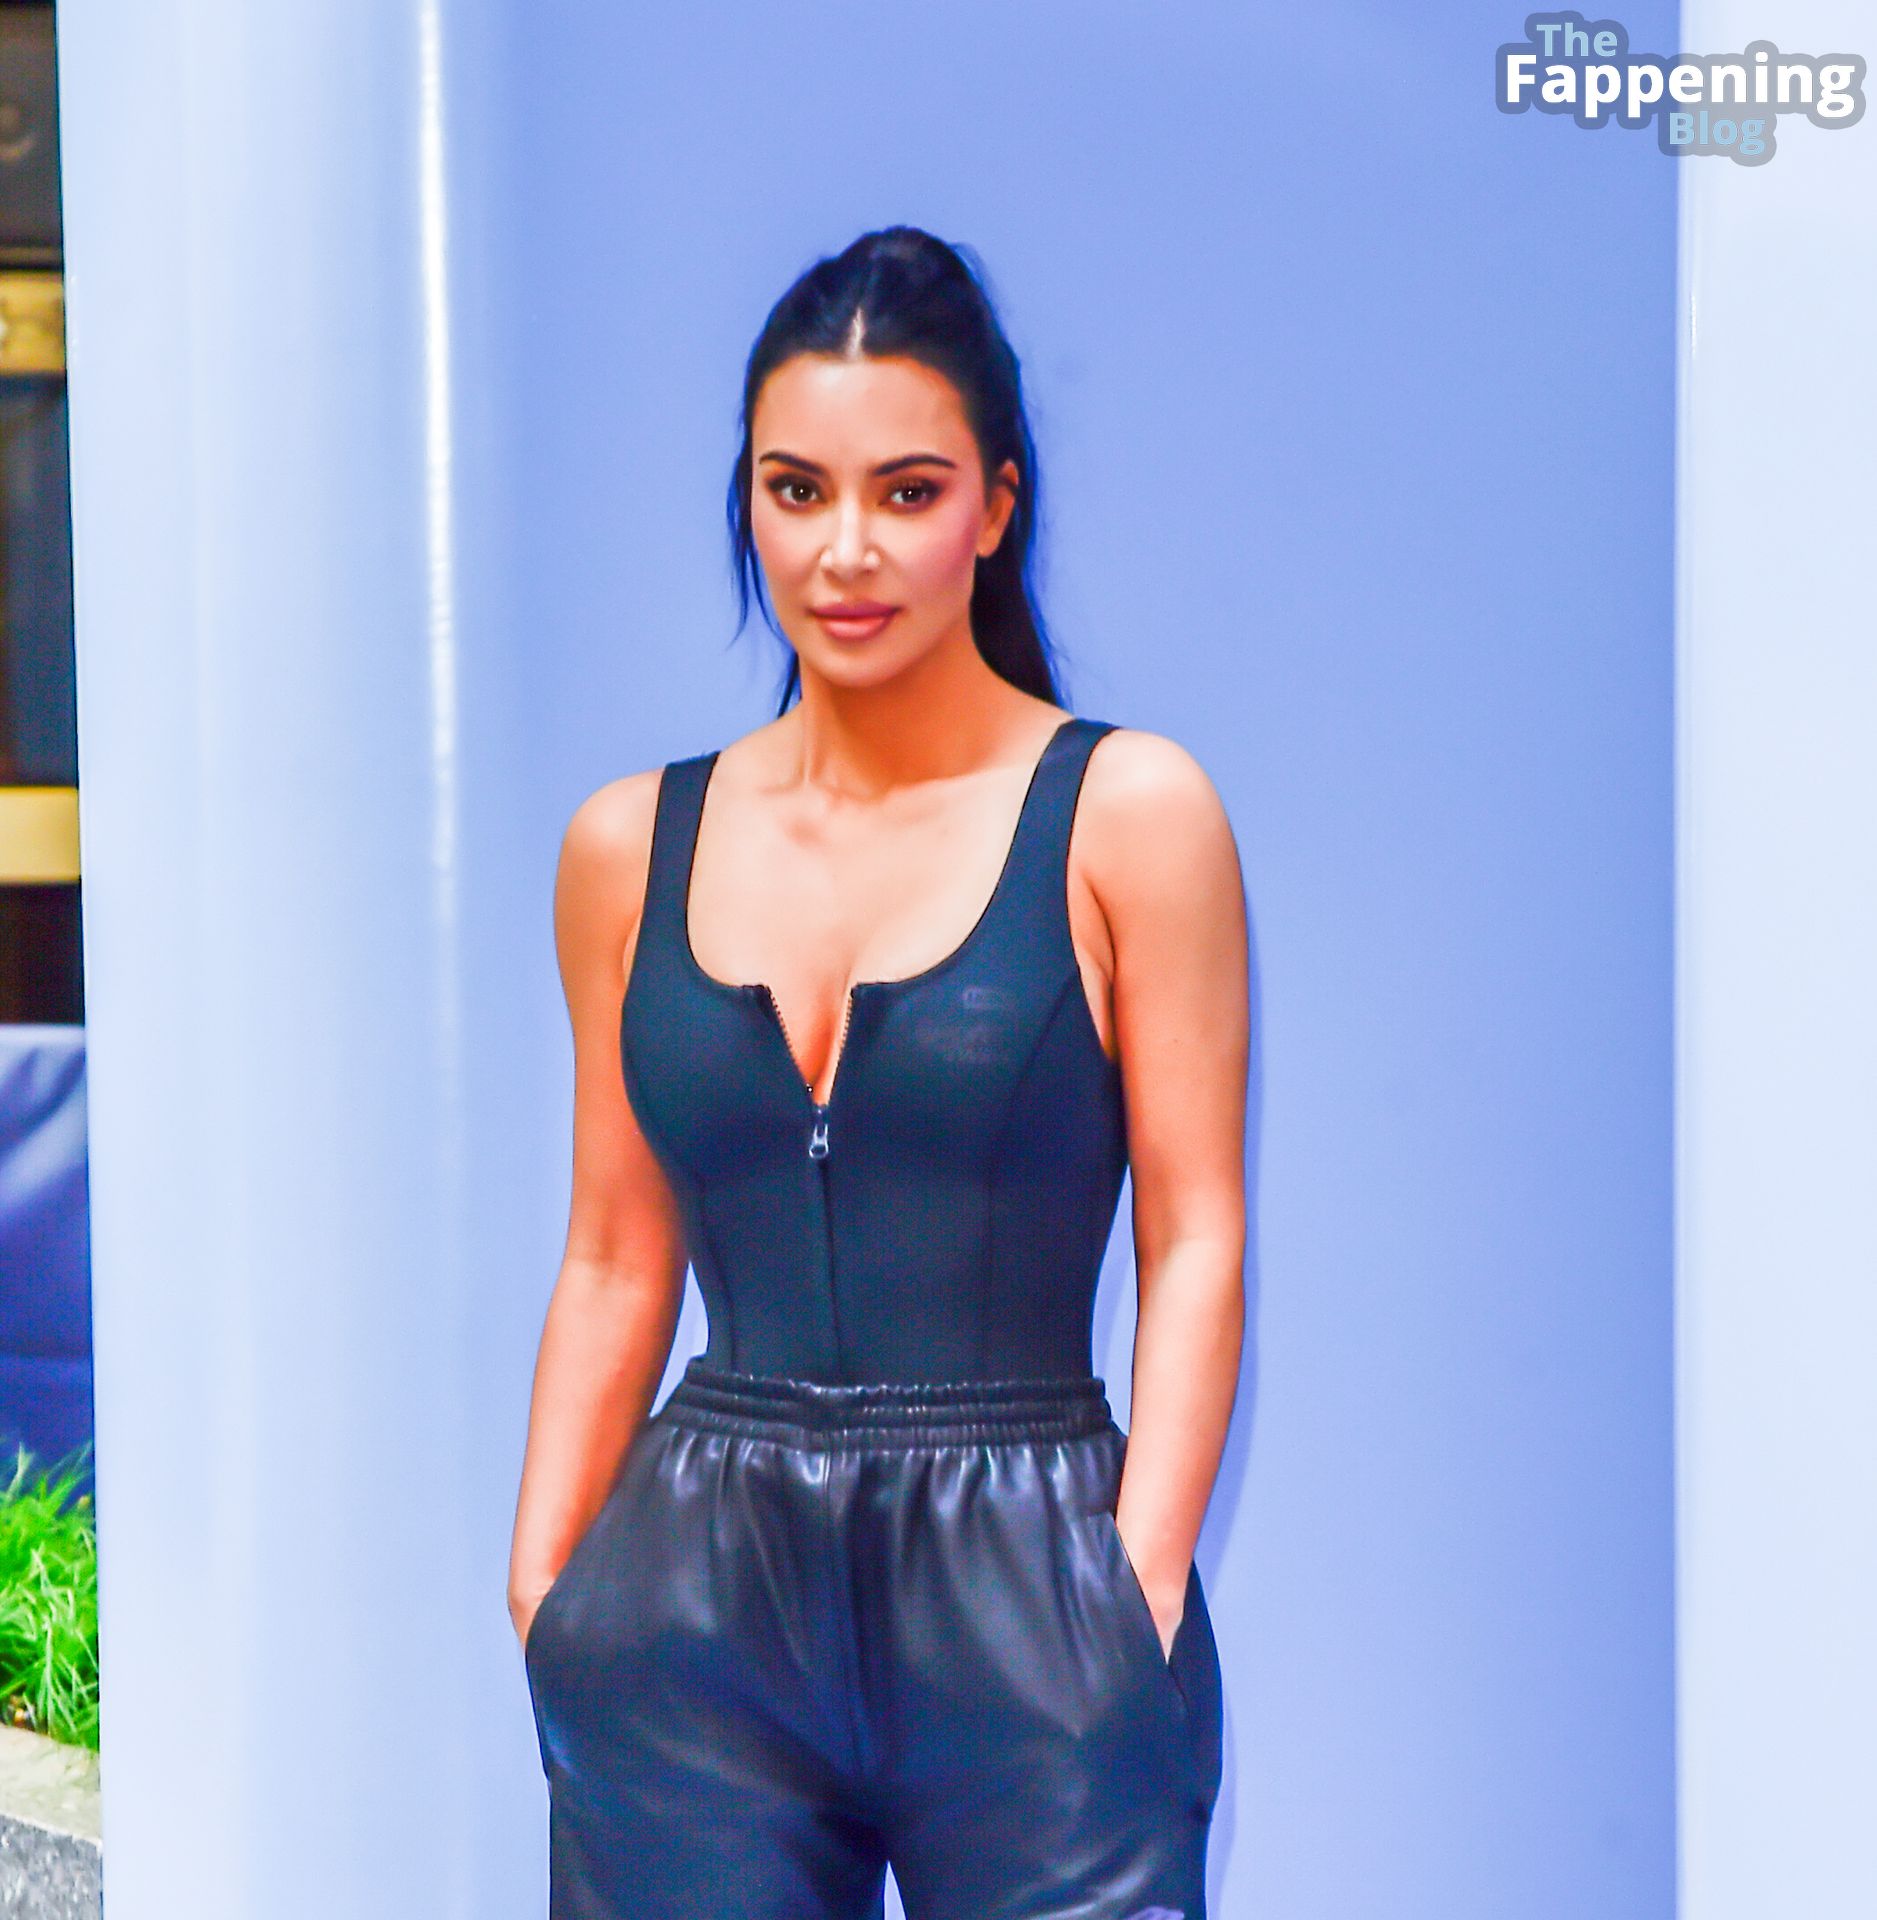 Kim-Kardashian-Sexy-The-Fappening-Blog-95-1.jpg